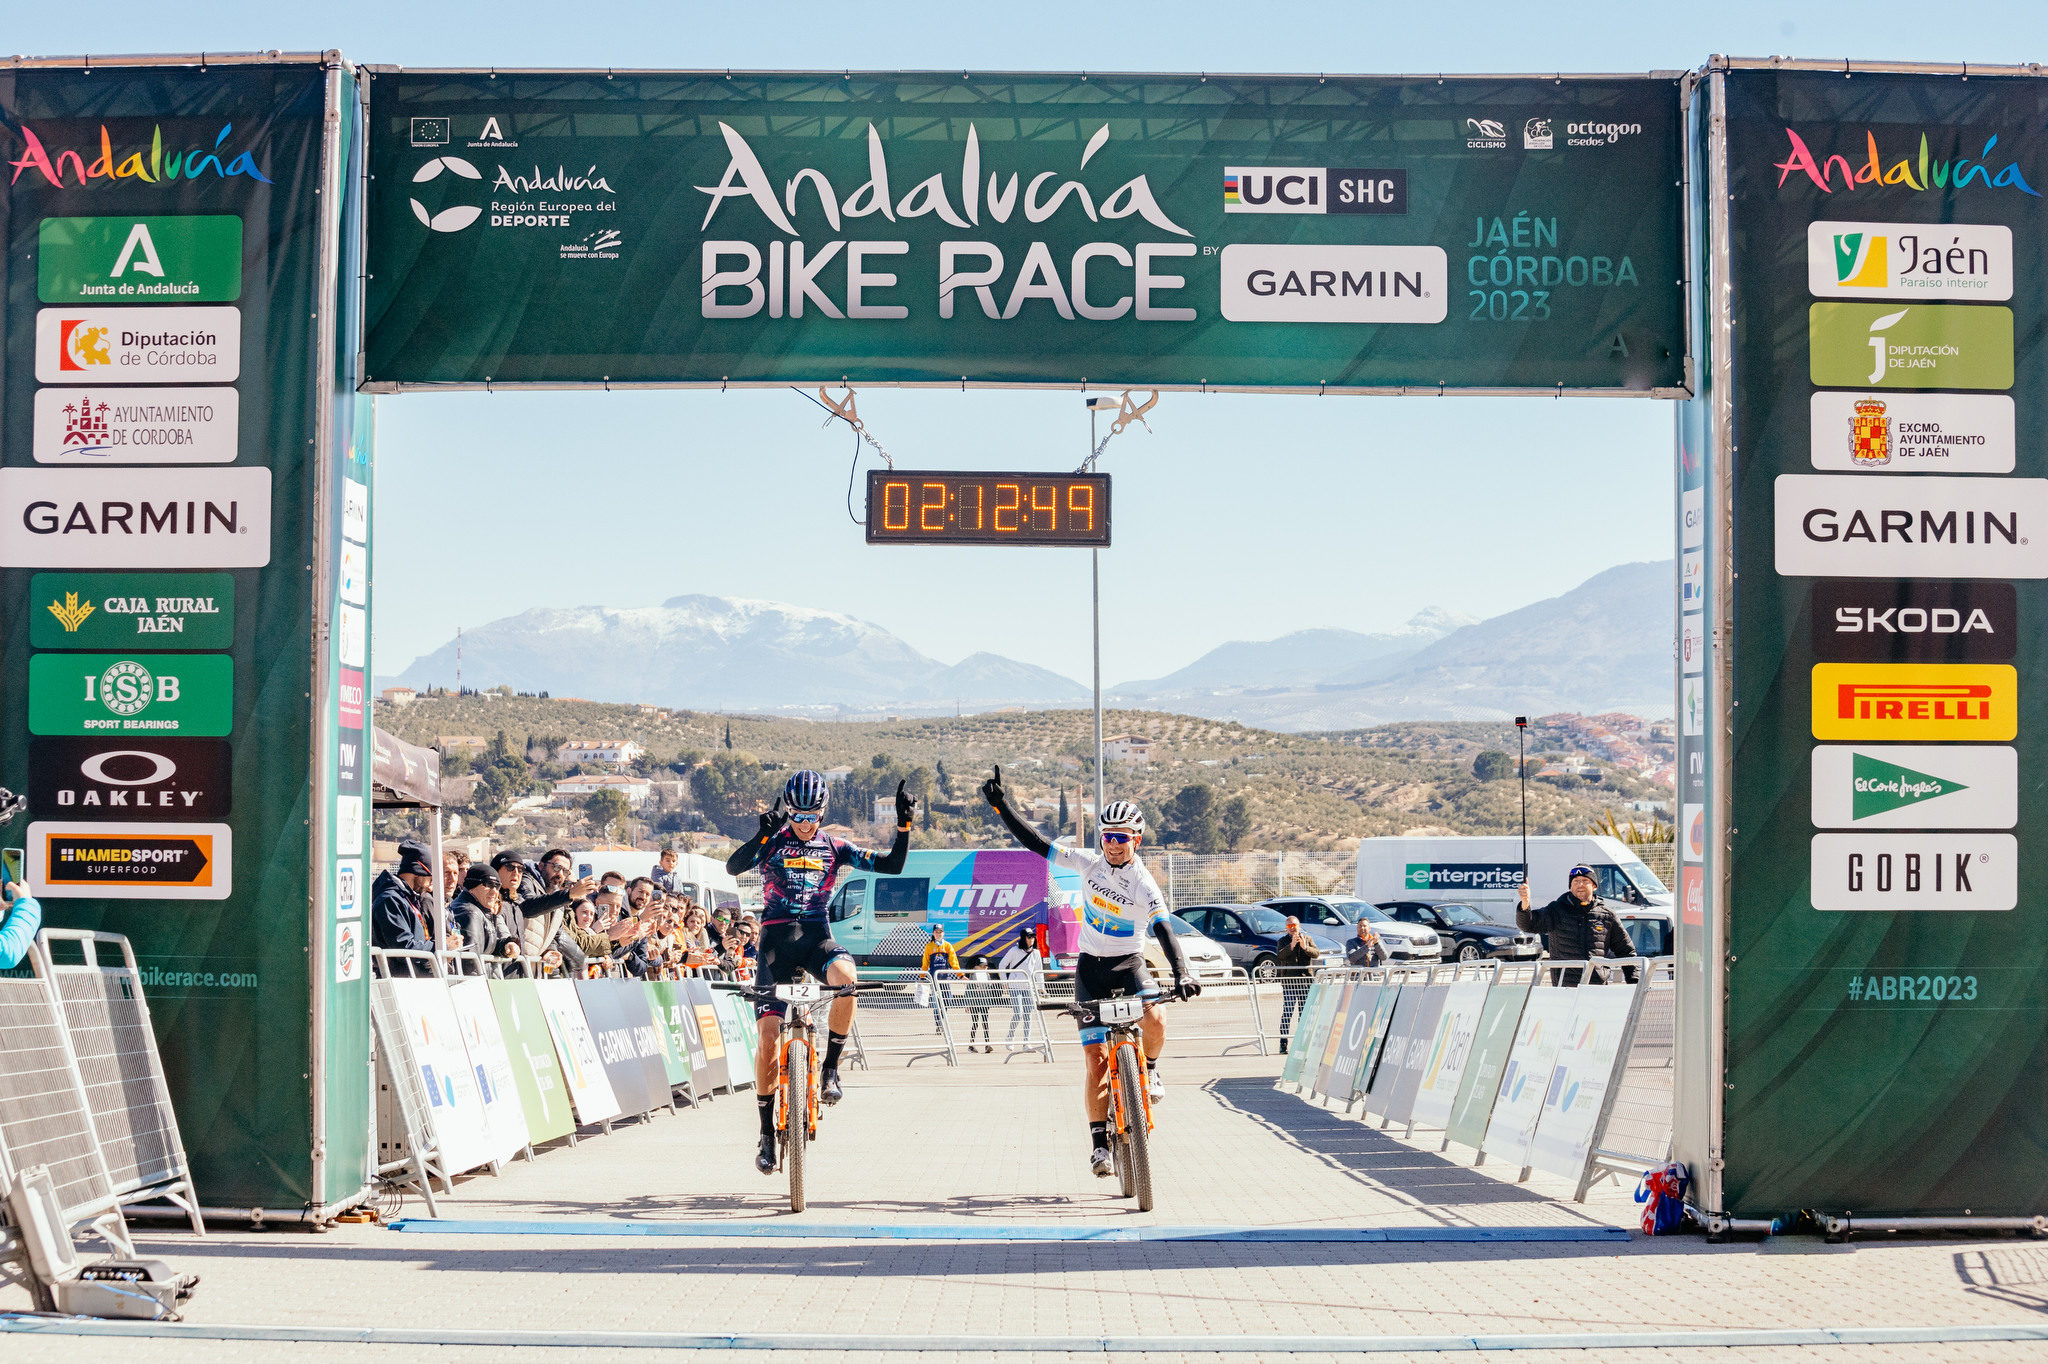 Illustratieve afbeelding van het artikel: "Wout Alleman laat moeilijke periode achter zich met ritwinst in Andalucia Bike Race"